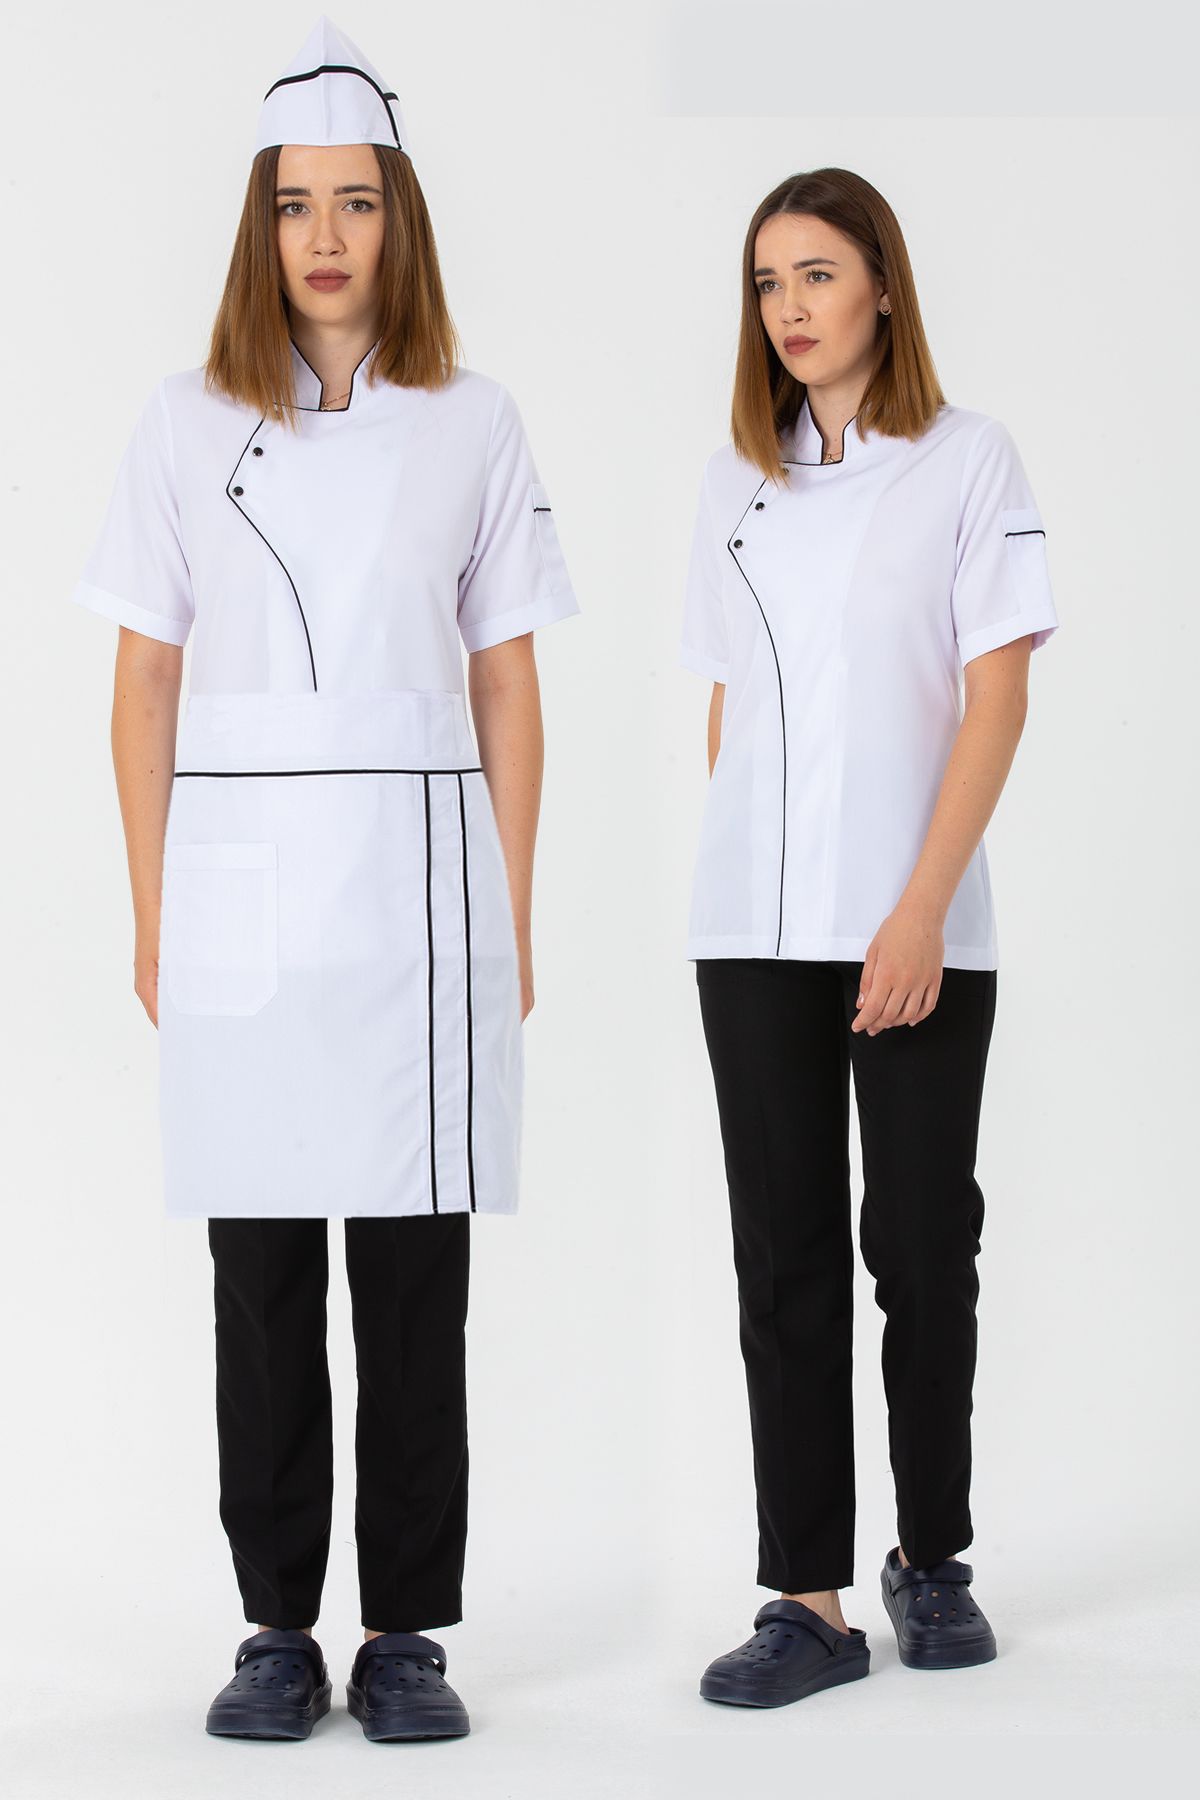 TIPTEKS Kadın Kısa Kollu Beyaz Ceket (Siyah Biyeli) + Siyah Pantolon + Bel Önlüğü ve Kep Dörtlü Aşçı Set